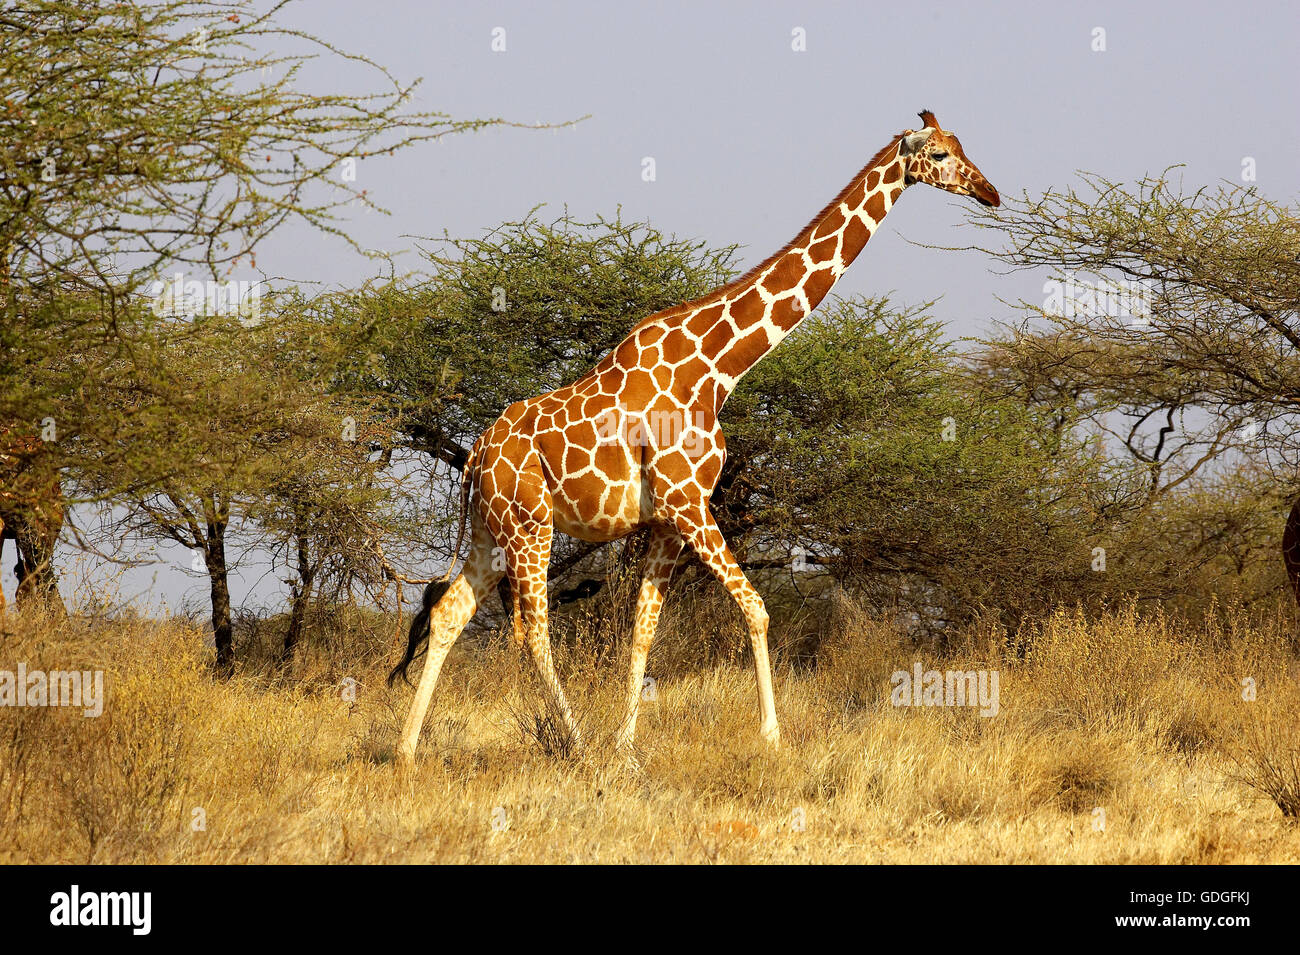 Netzartige Giraffe Giraffa Plancius Reticulata, Erwachsenen zu Fuß durch Akazien-Bäume, Samburu Park in Kenia Stockfoto